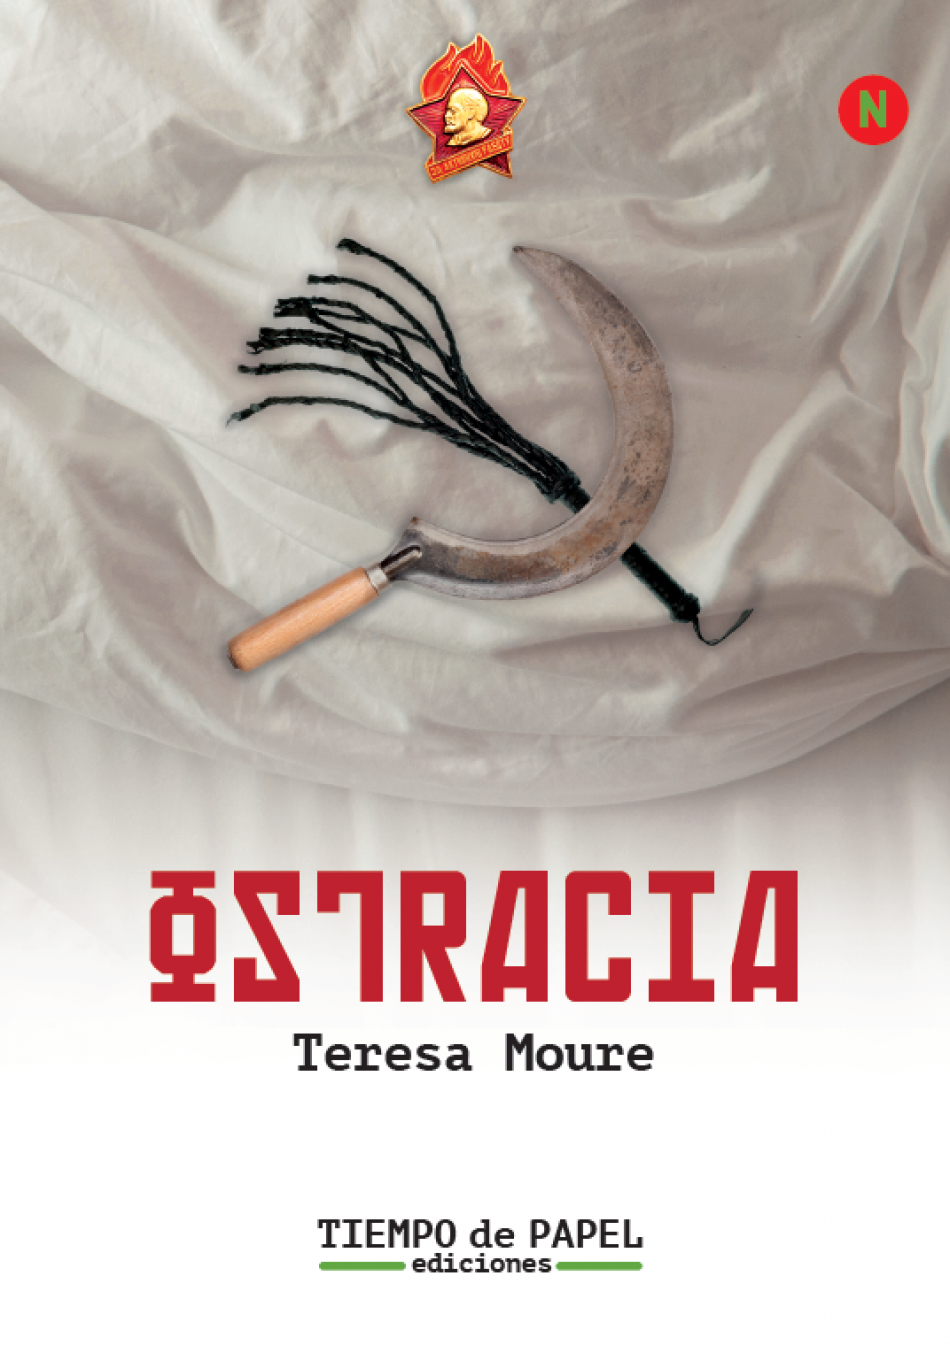 Teresa Moure novela la vida de Inessa Armand